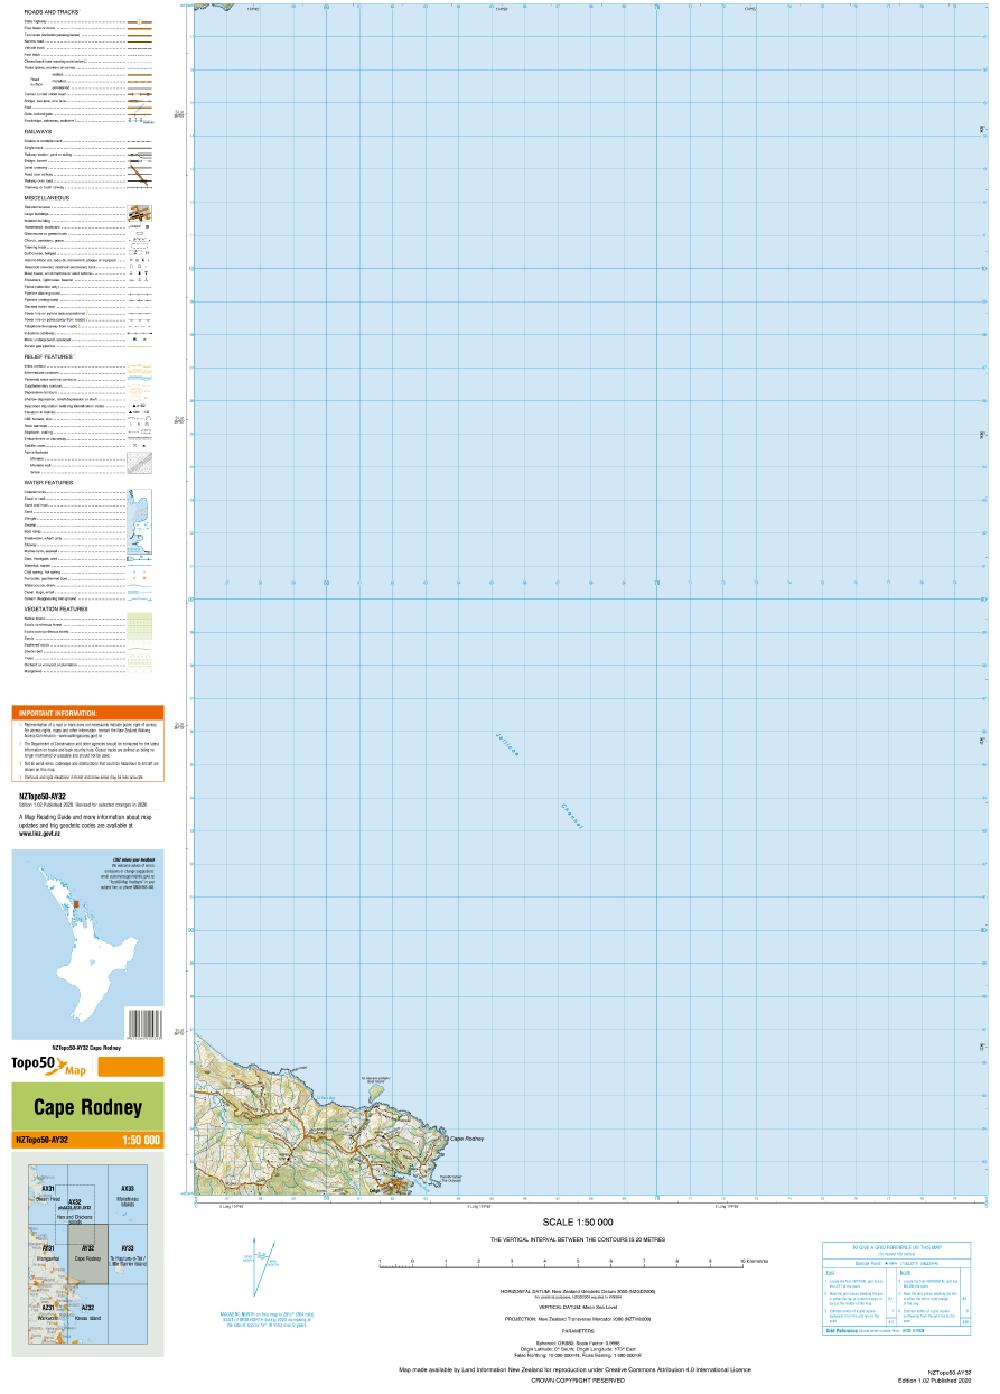 Topo map of Cape Rodney